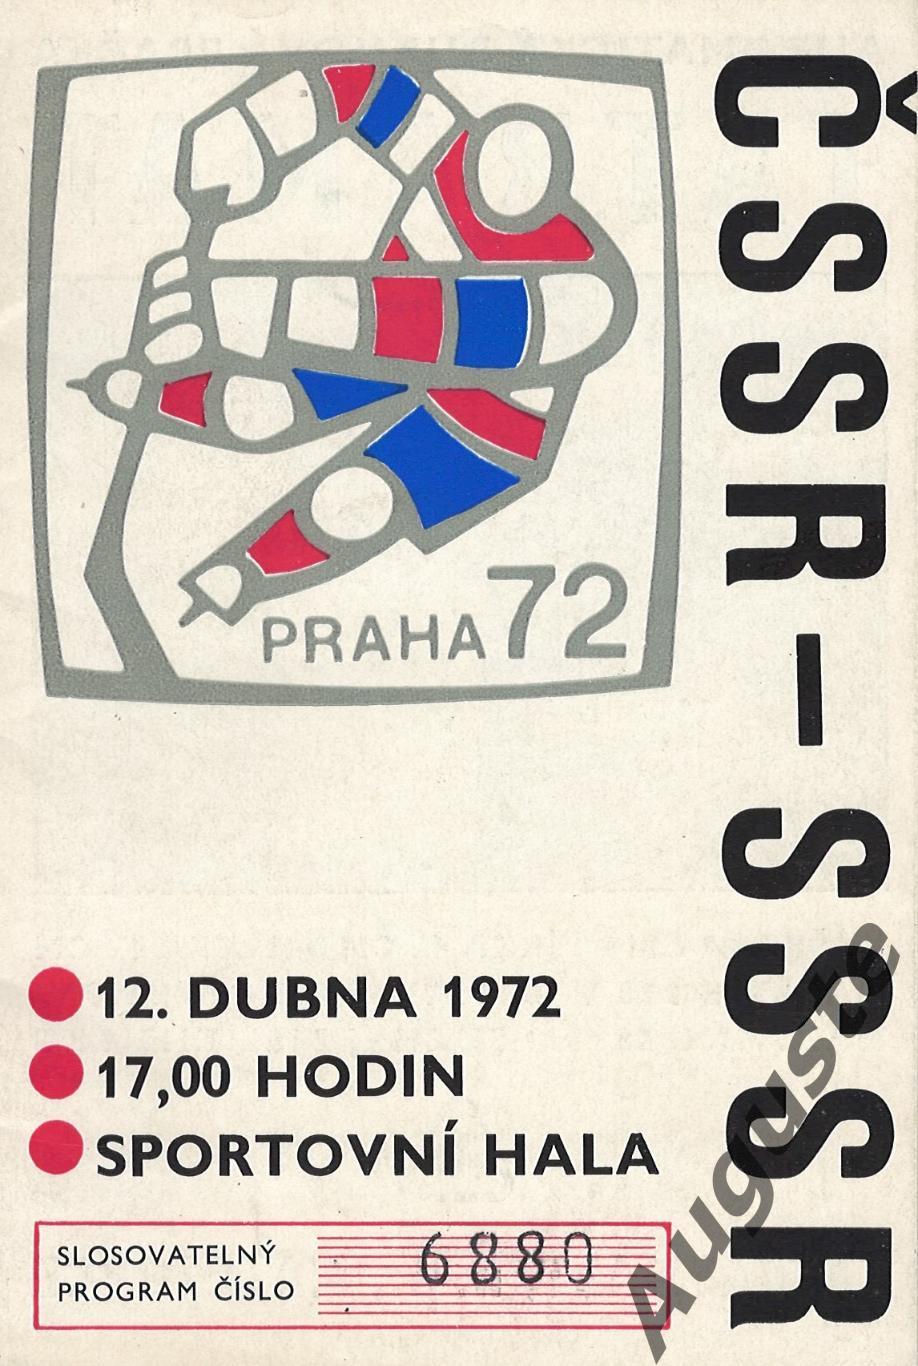 ЧССР-СССР 12 апреля 1972 г. Матч чемпионата мира в Праге.